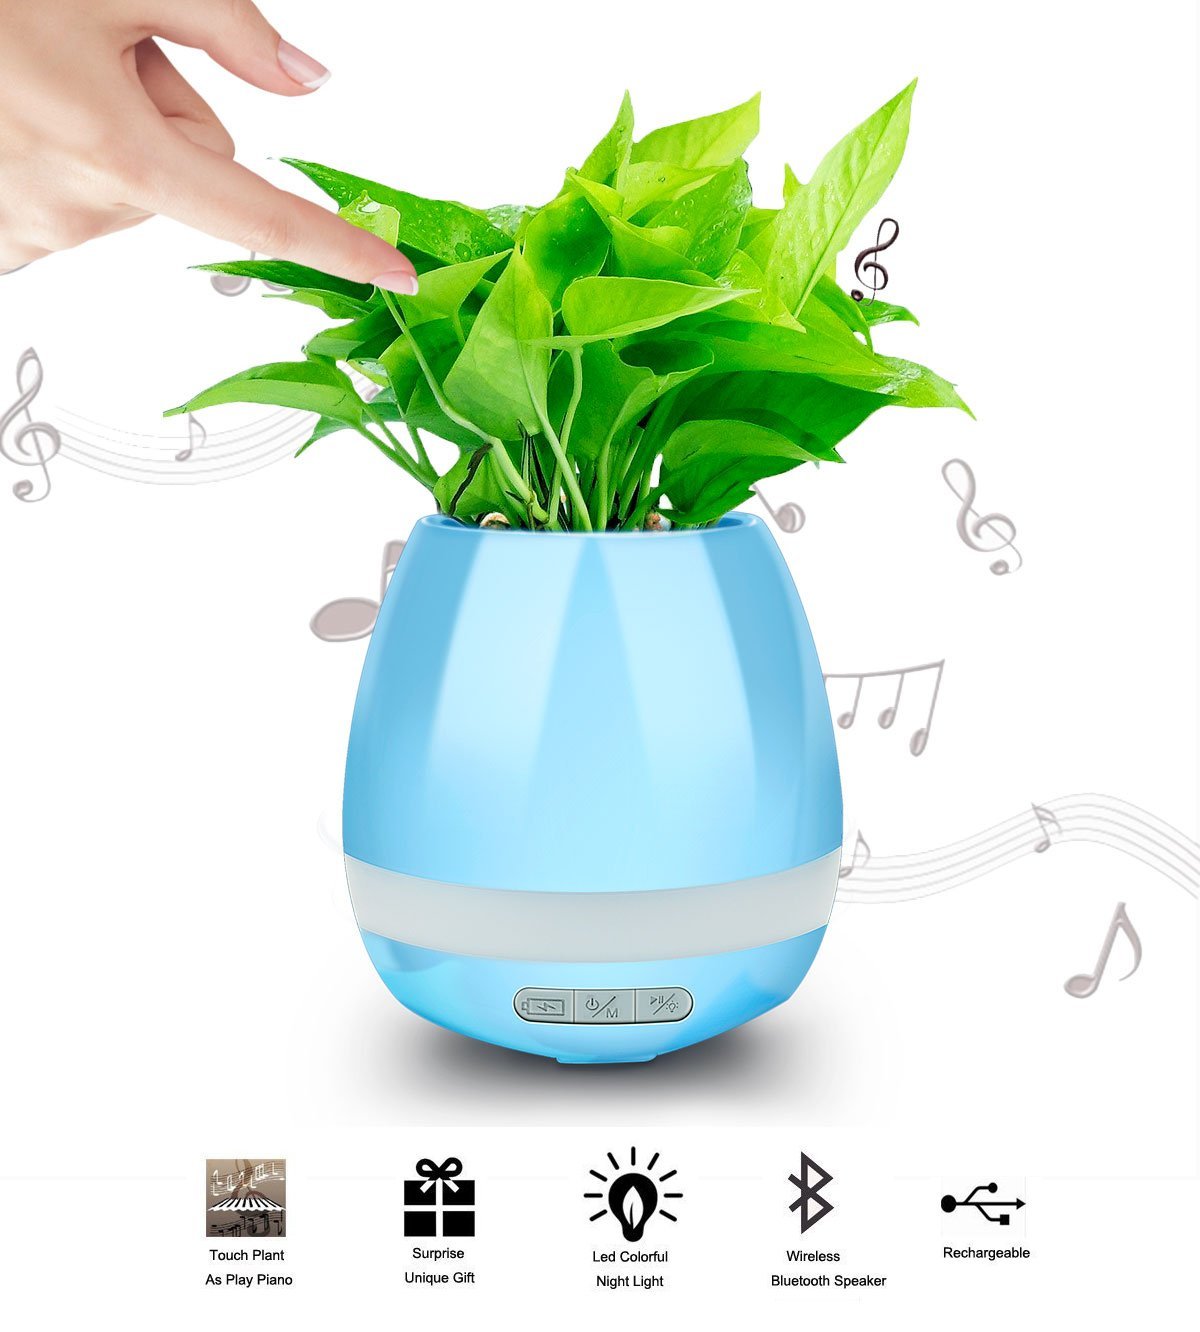 Wireless Bluetooth FLowerpot Speaker Just $9.99! Great Gift Idea!